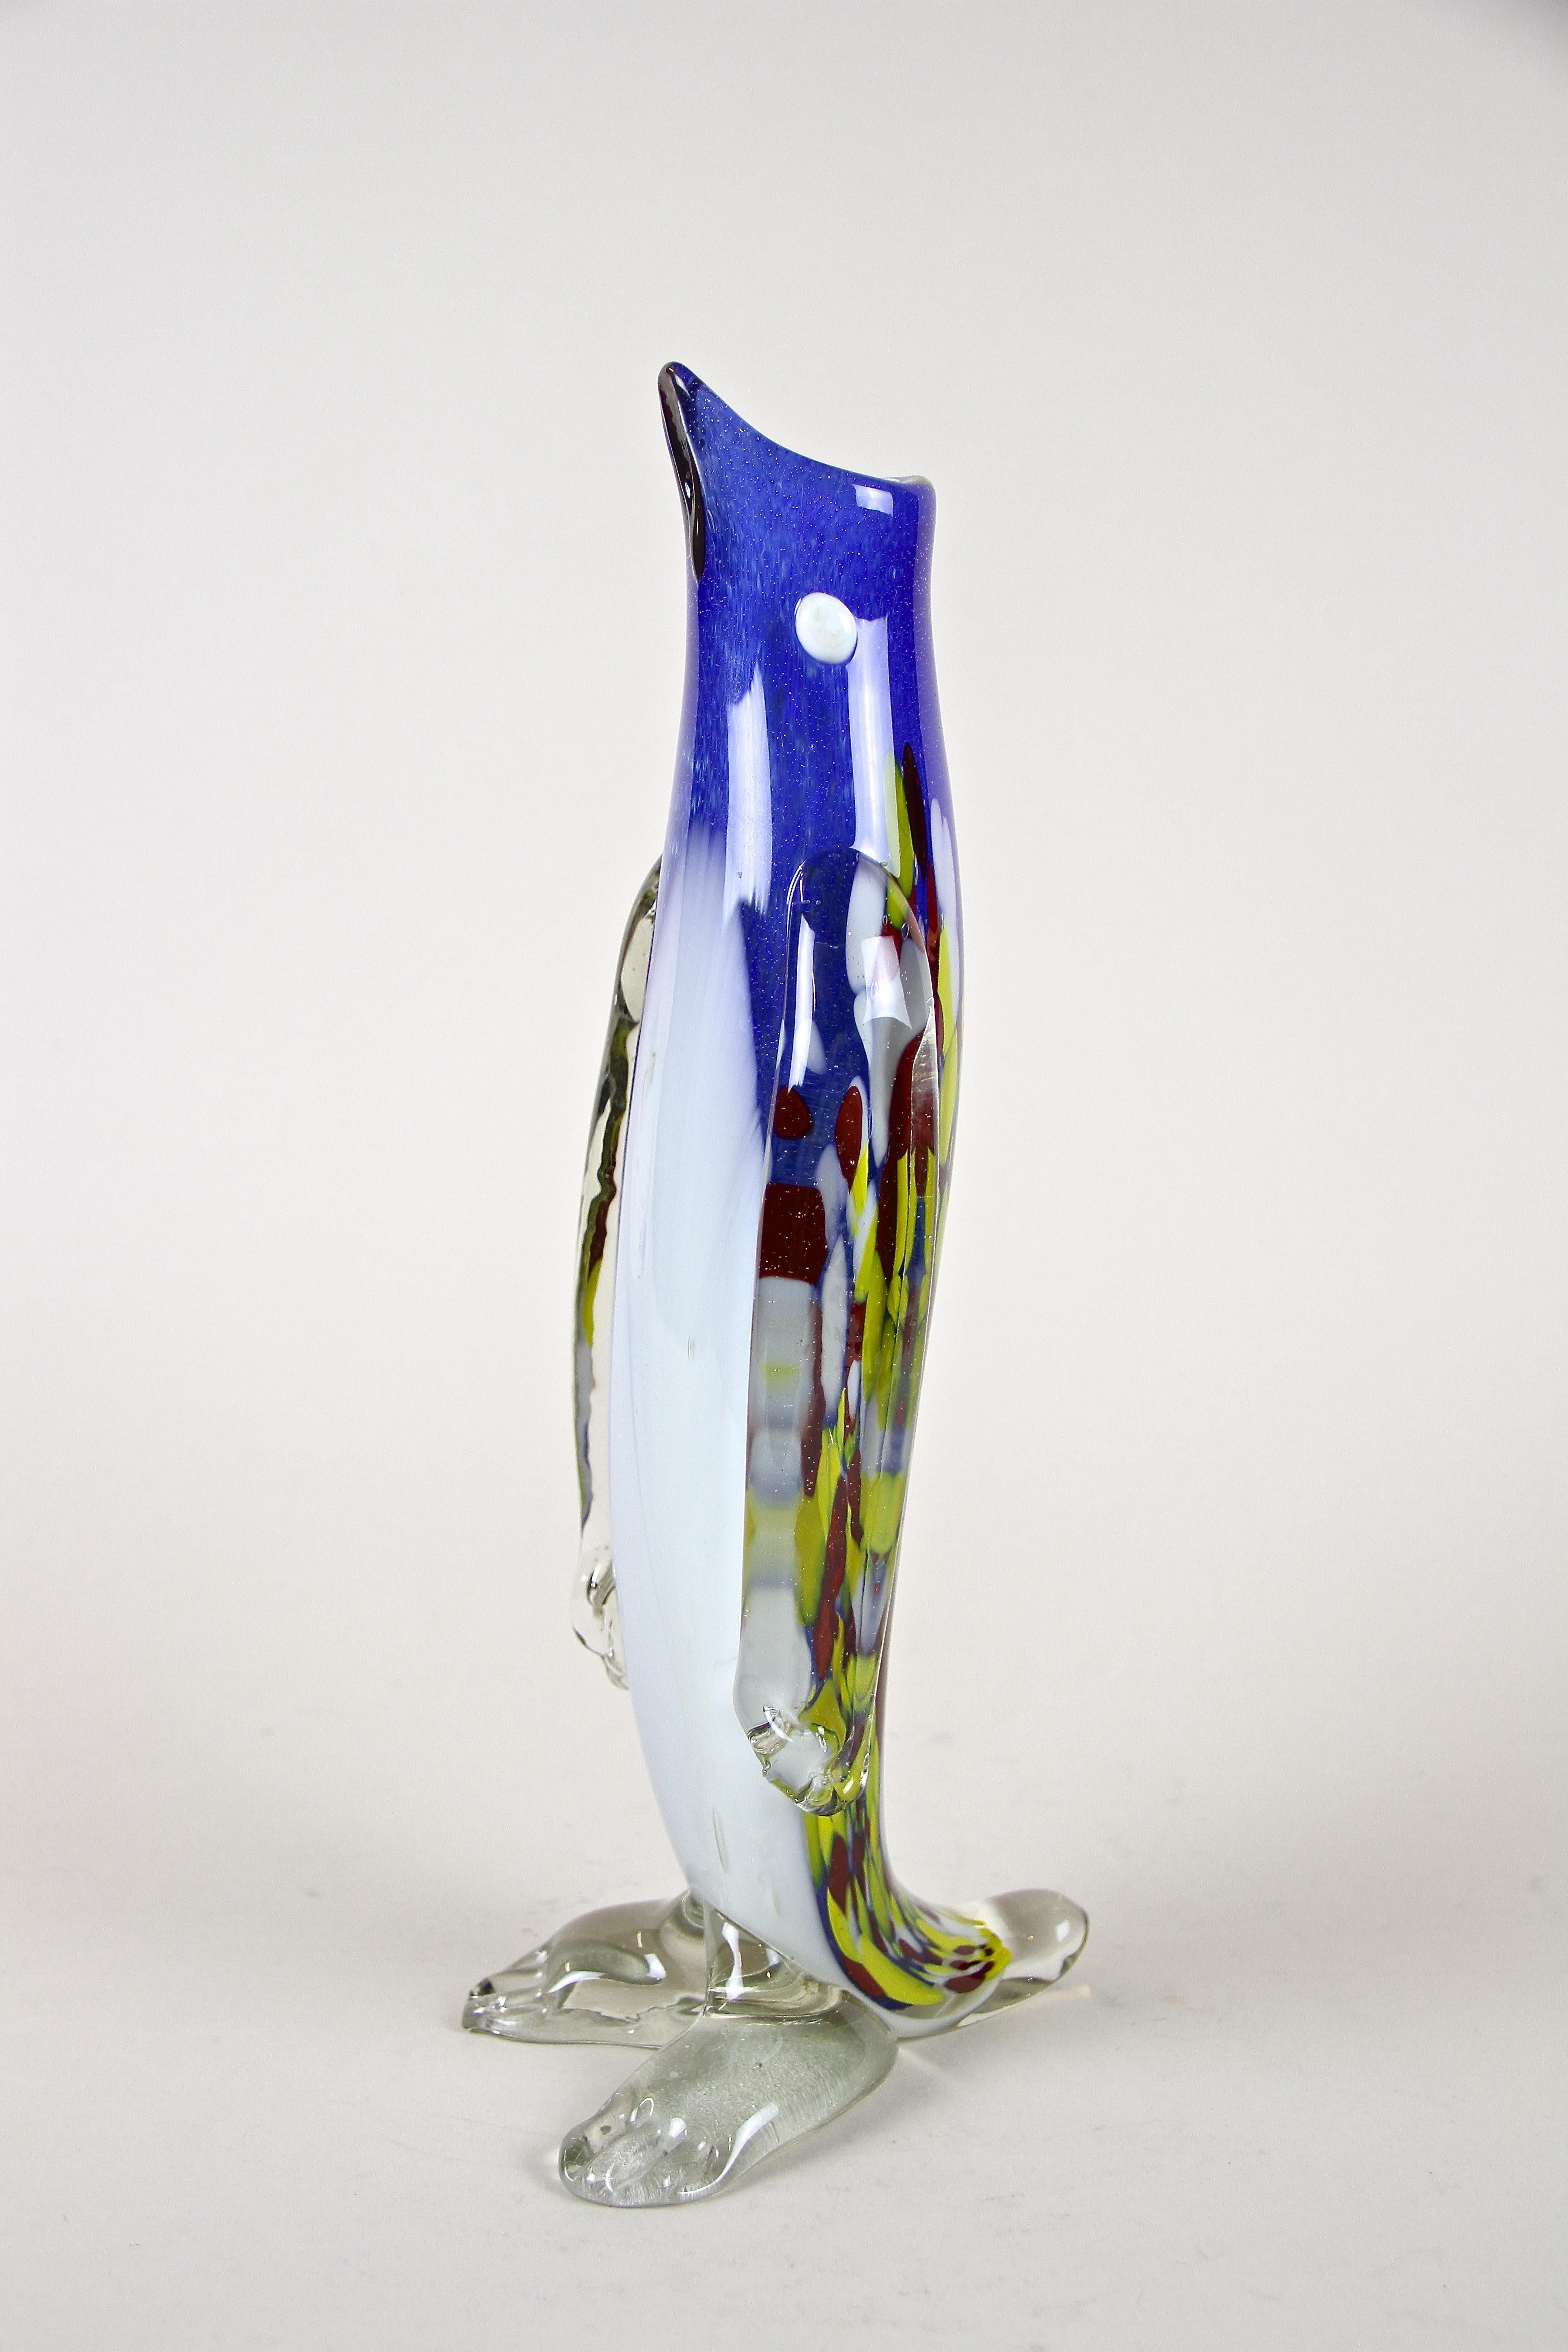 Extraordinaire vase pingouin en verre de Murano du 20e siècle provenant des célèbres ateliers italiens des années 1960. Un vase au design exceptionnel en forme de pingouin. La fantastique mise en couleur montre l'incroyable savoir-faire des